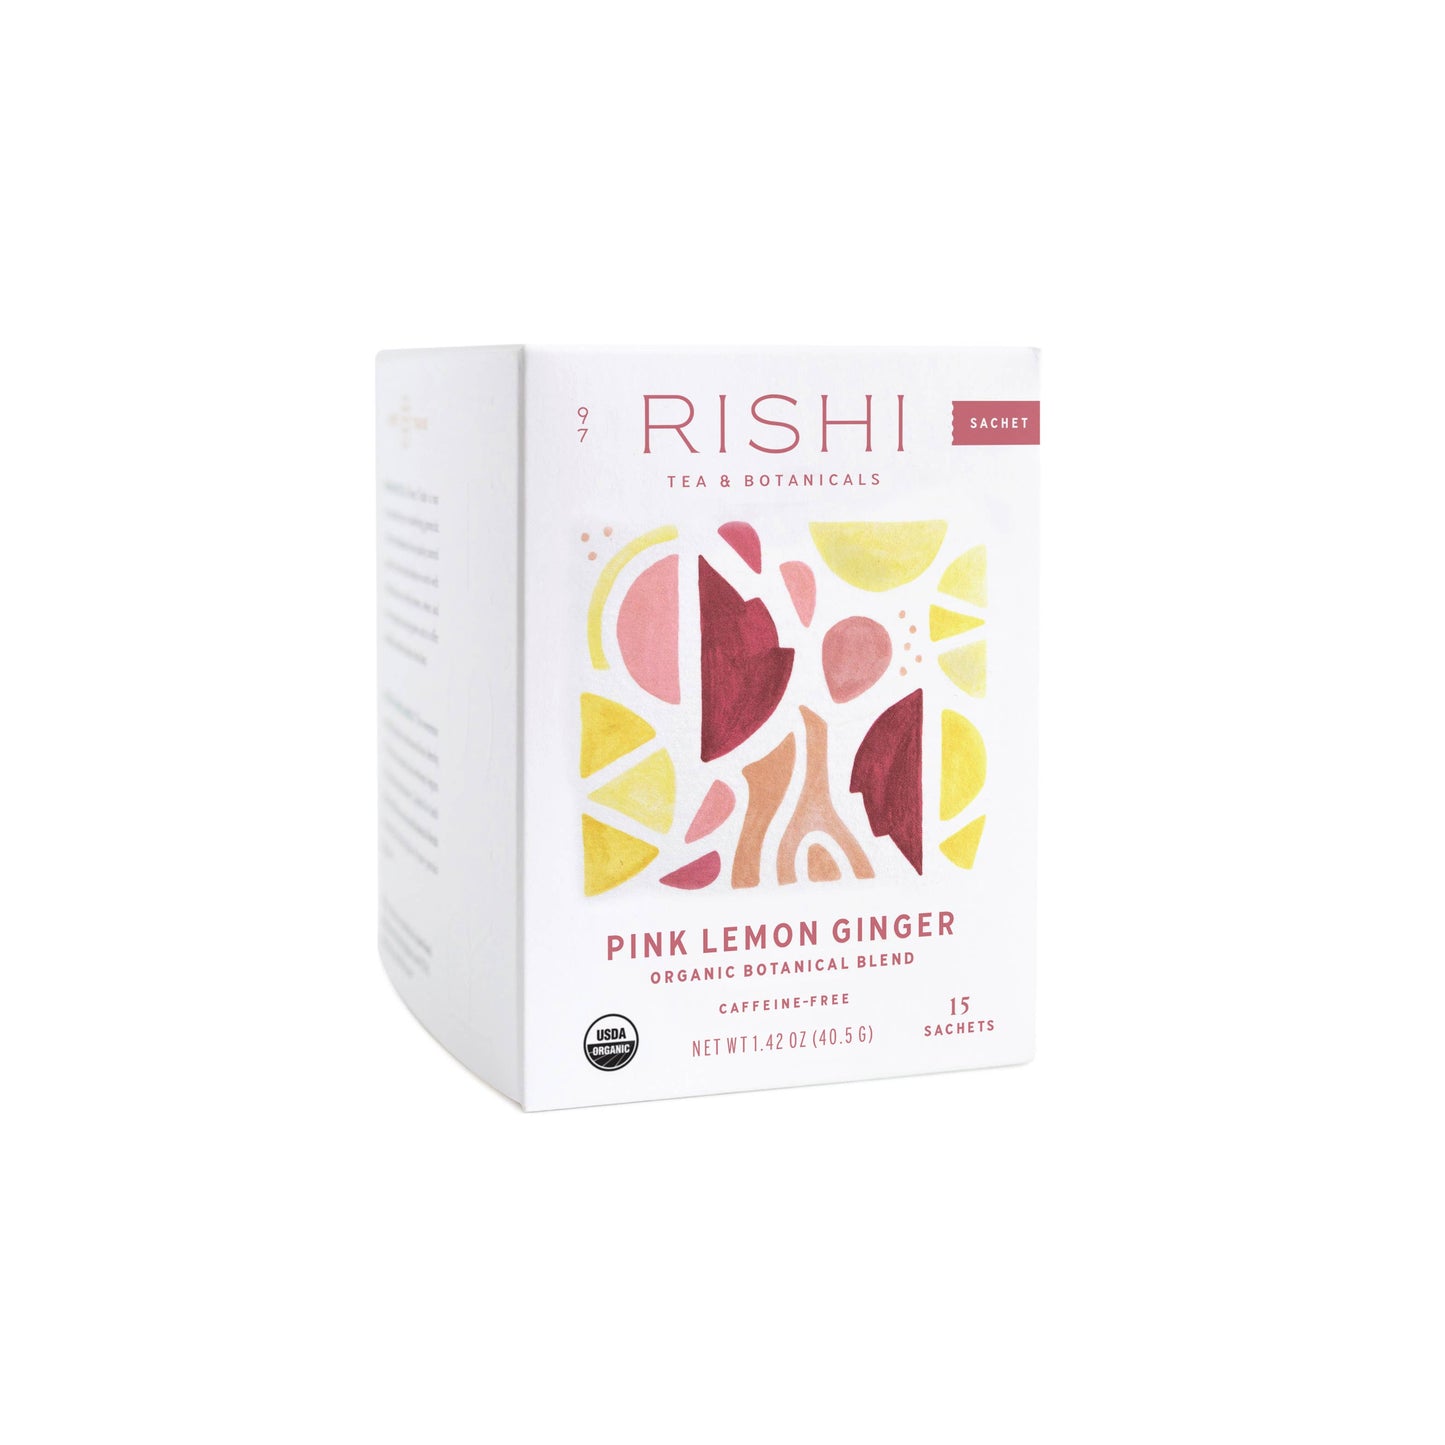 Rishi Tea & Botanicals - Pink Lemon Ginger Organic Herbal Tea Sachets